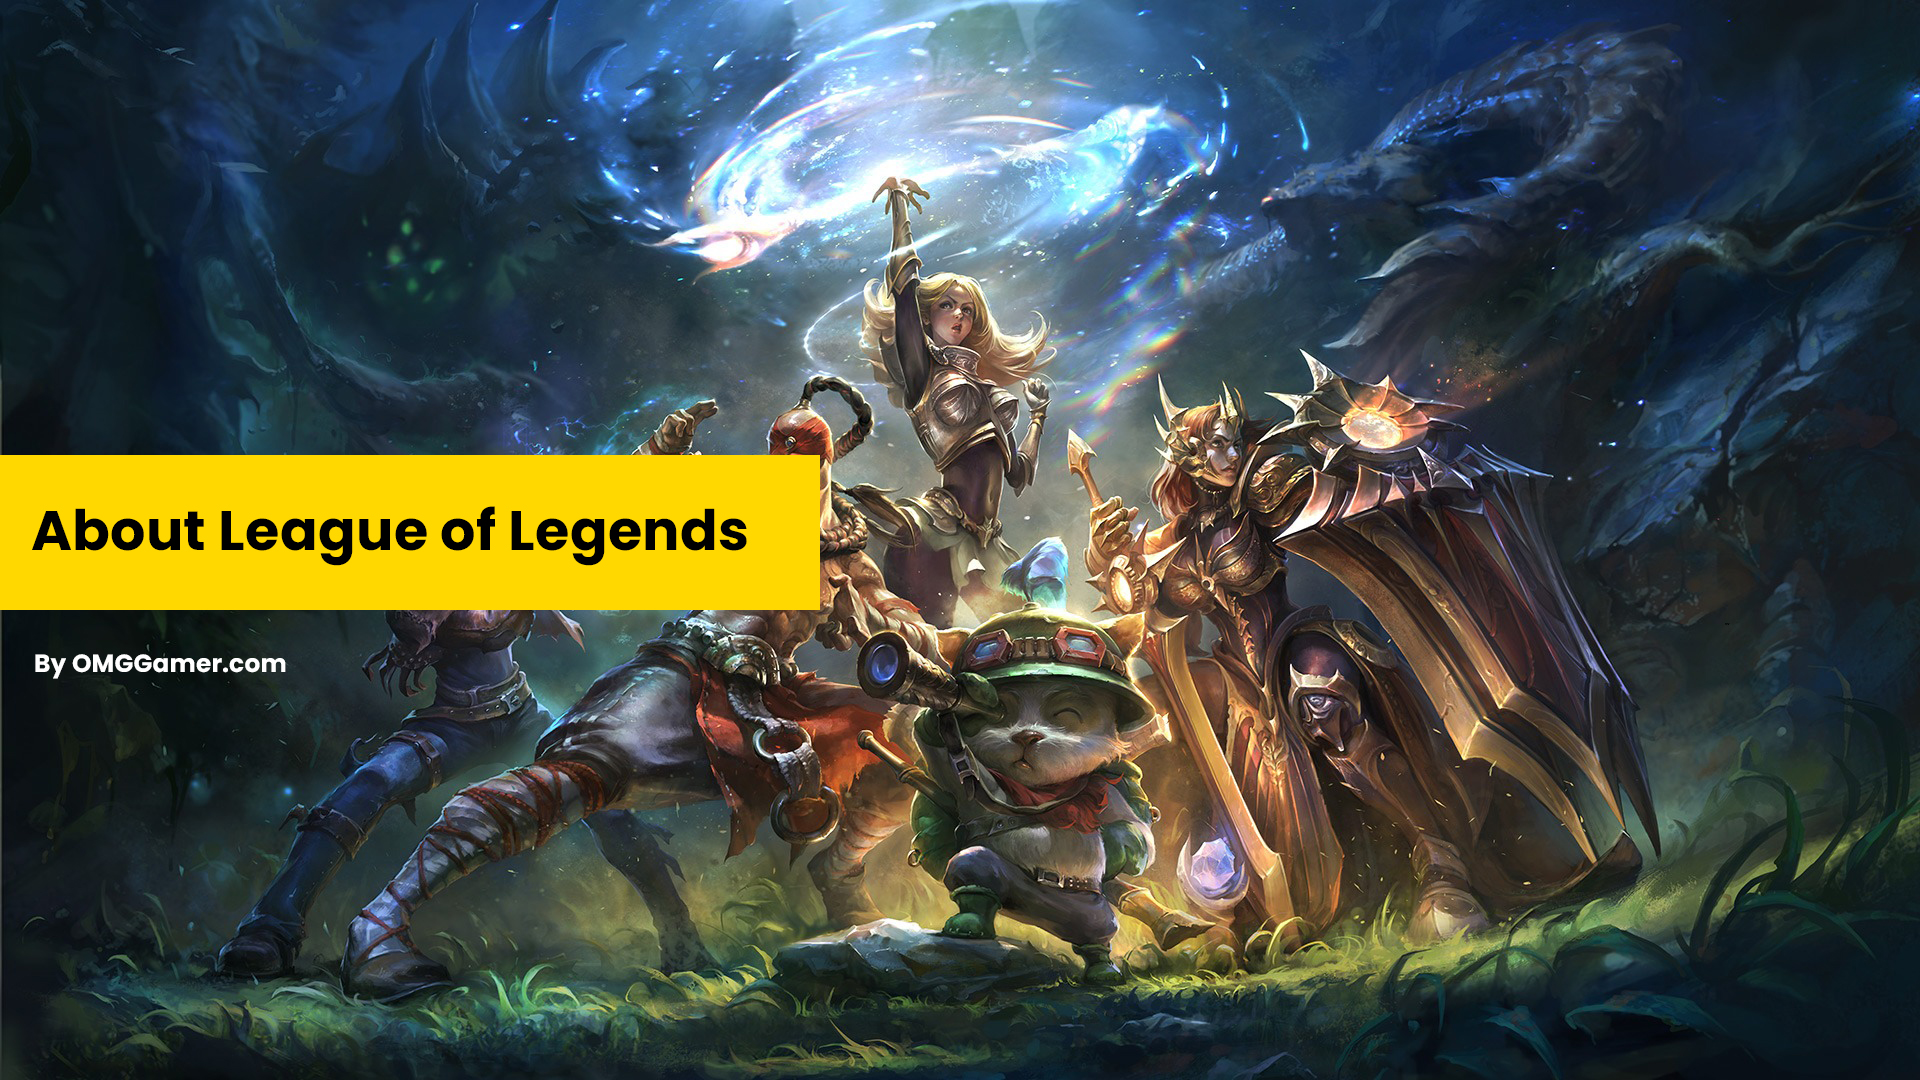 About League of Legends